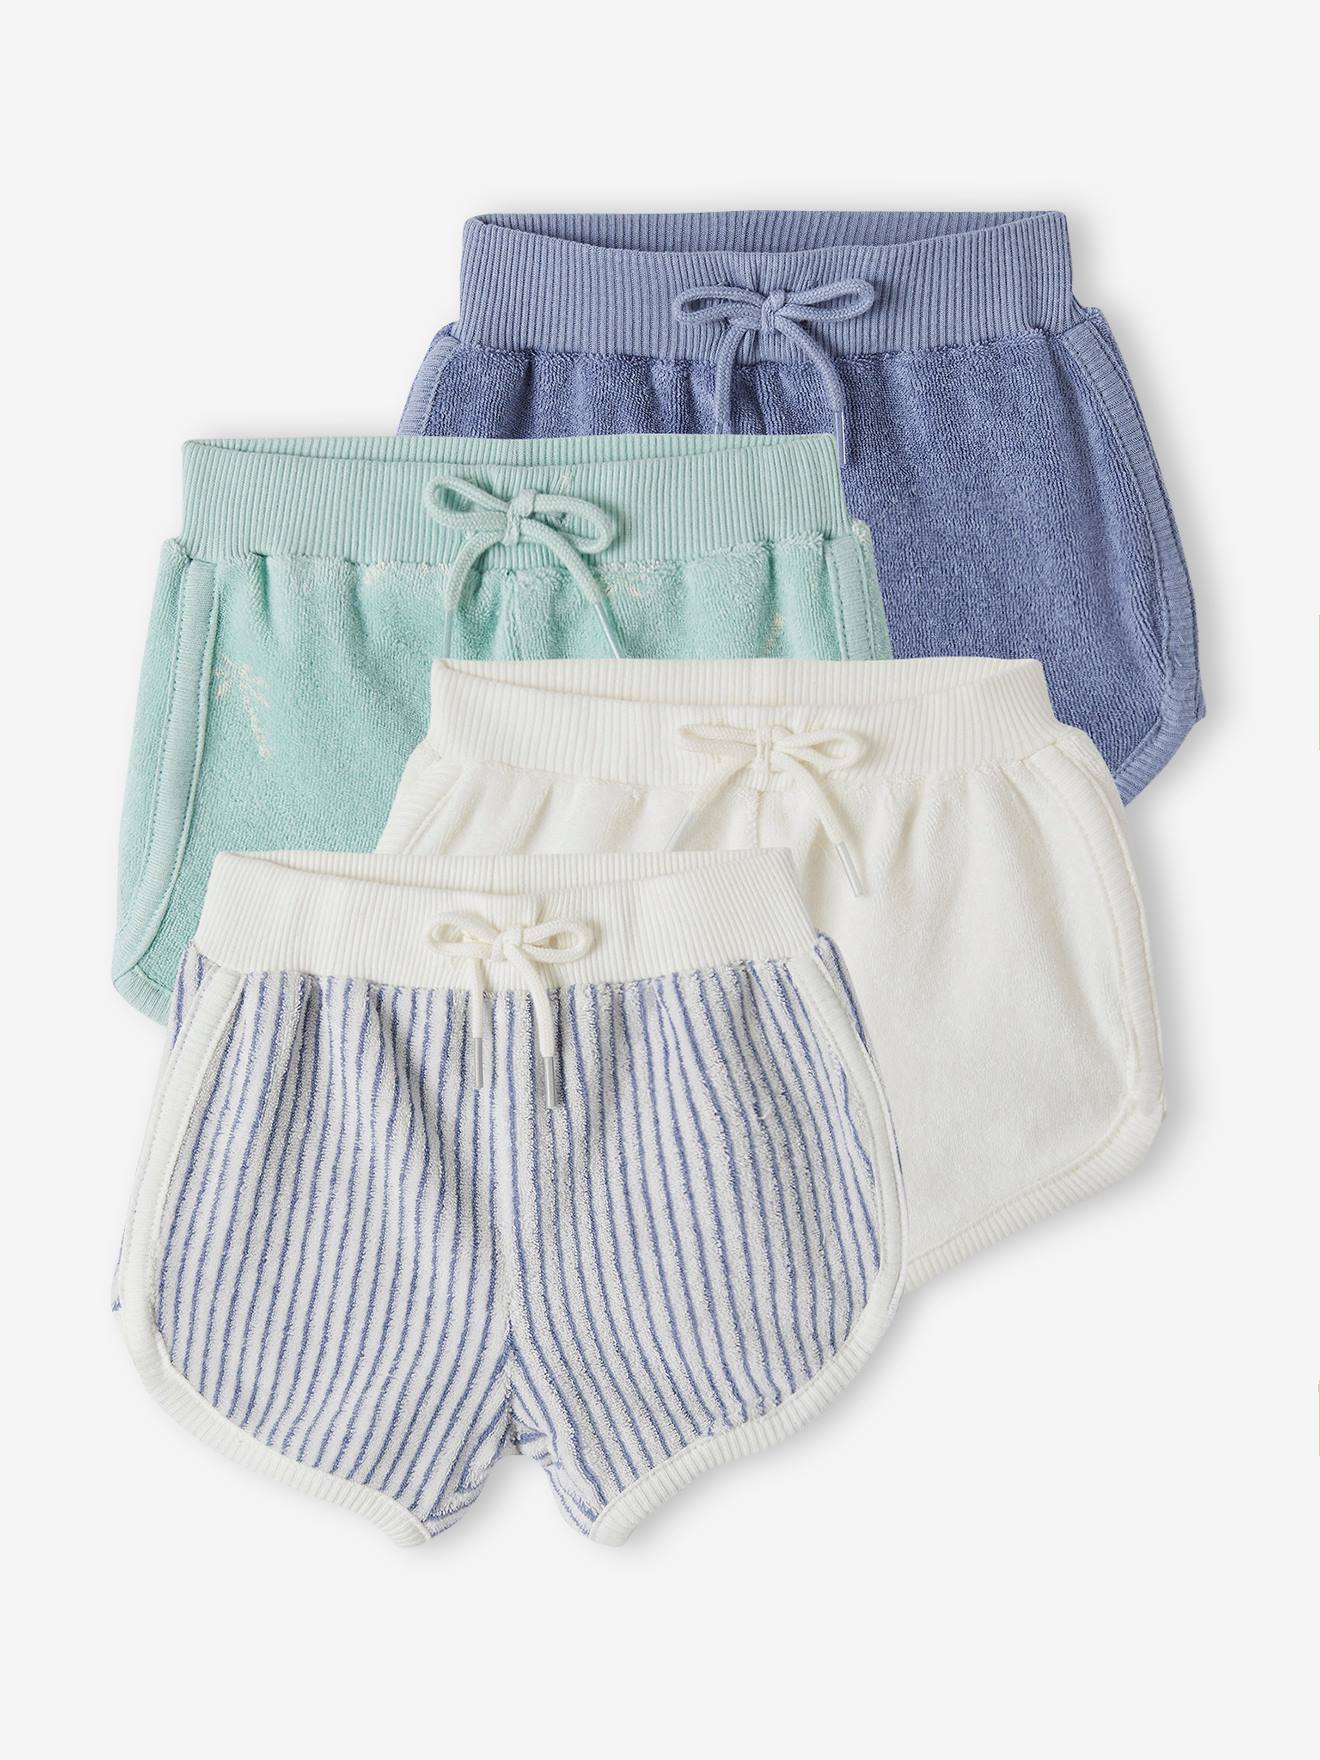 VERTBAUDET Pack de 4 shorts de felpa para bebé recién nacido azul chambray